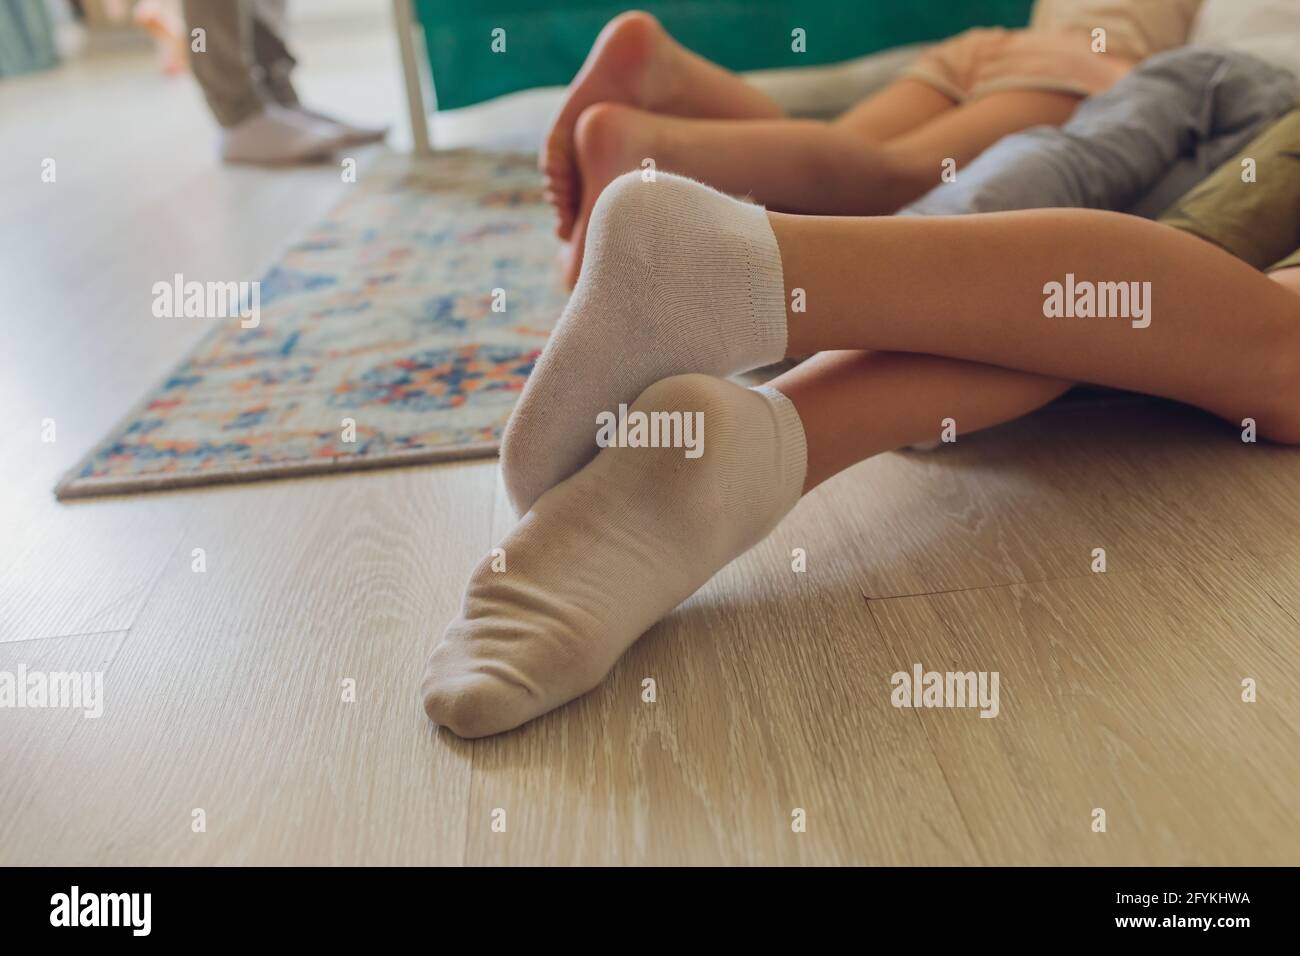 Weibliche Hand Nahaufnahme. Schmutzige weiße Socken knapper Vorrat  Stockfotografie - Alamy